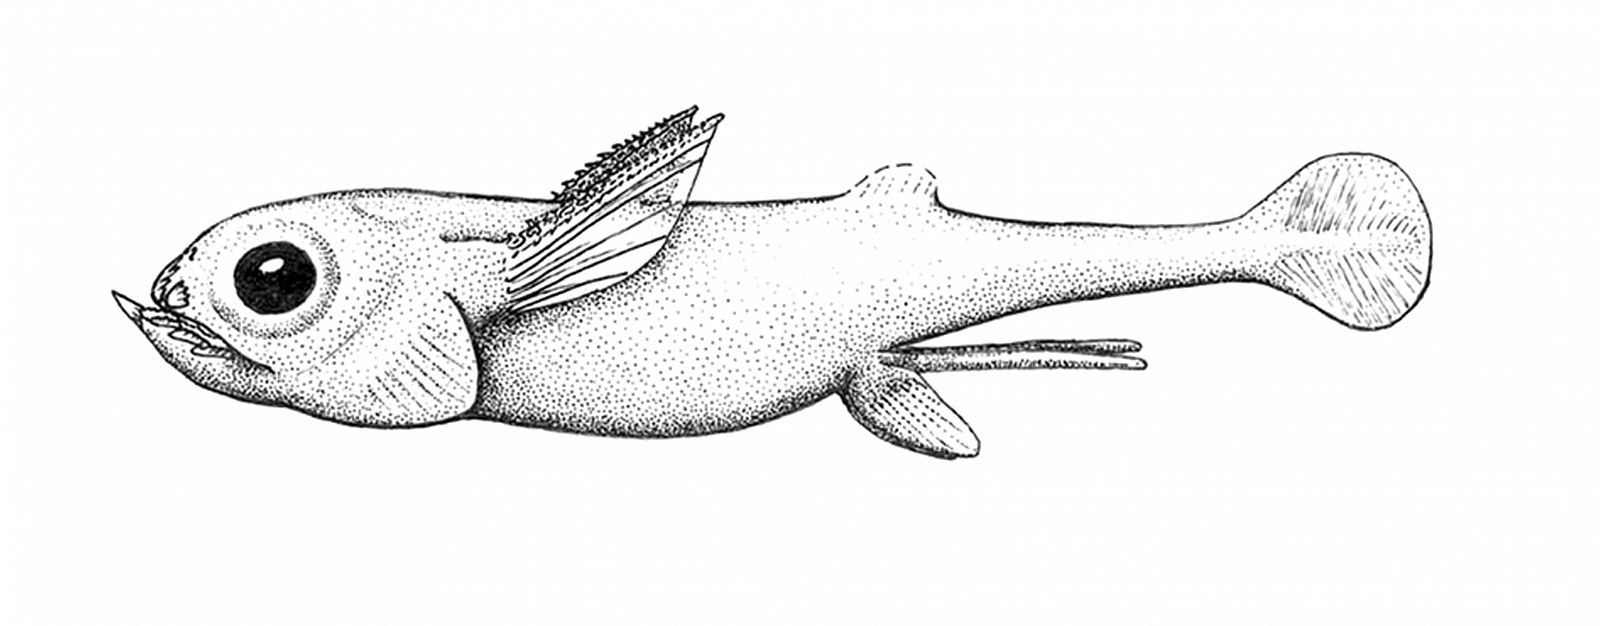 El 'iniopterygian', pez extinto que vivió hace 300 millones de años